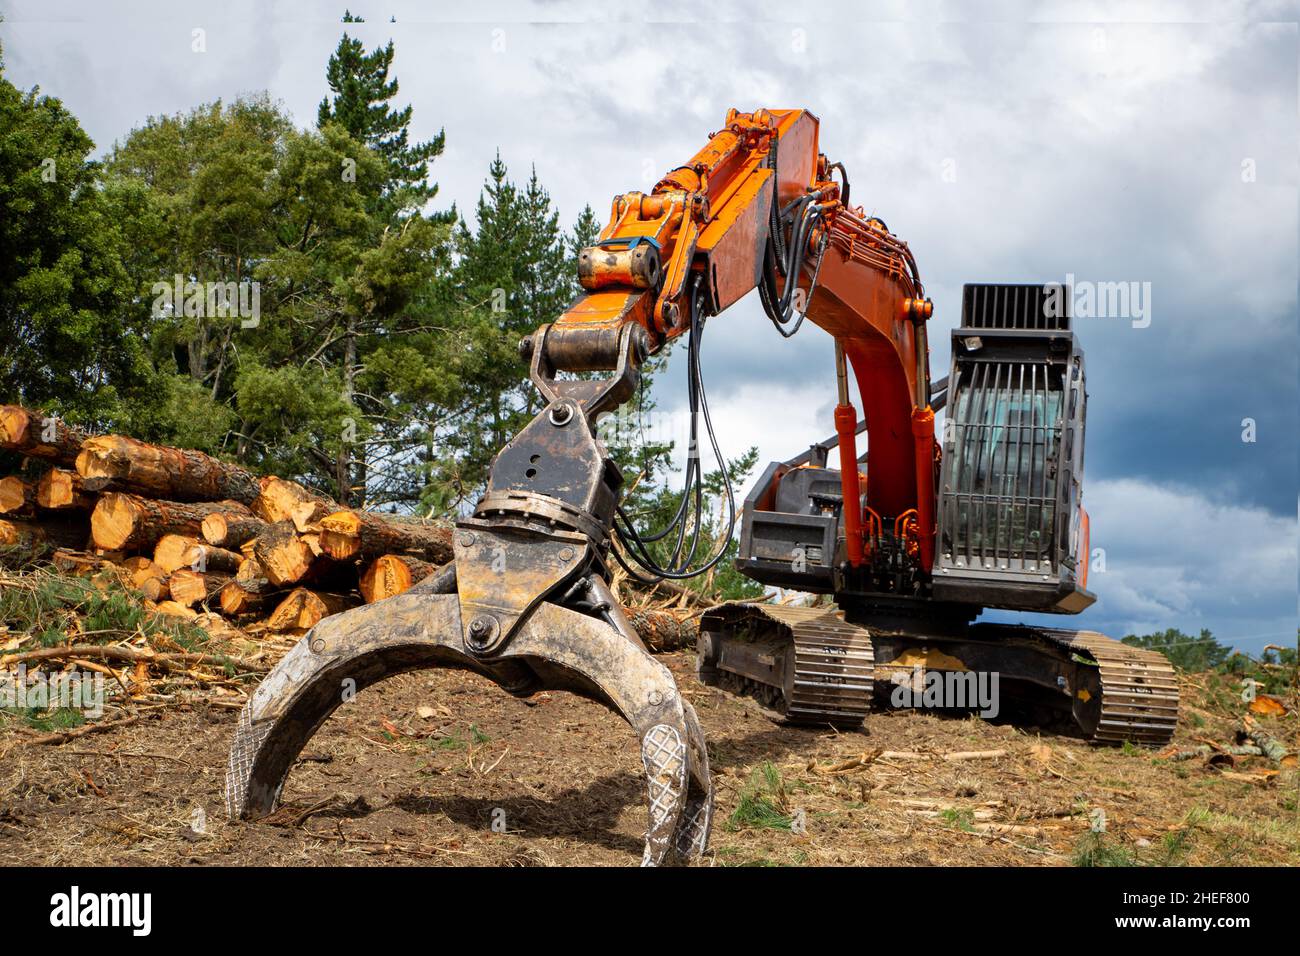 Troncos de pino talados y cortados listos para ser apilados en un camión de troncos para su extracción. Maquinaria forestal pesada utilizada para árboles maduros. Isla Norte, Nueva Zelanda Foto de stock